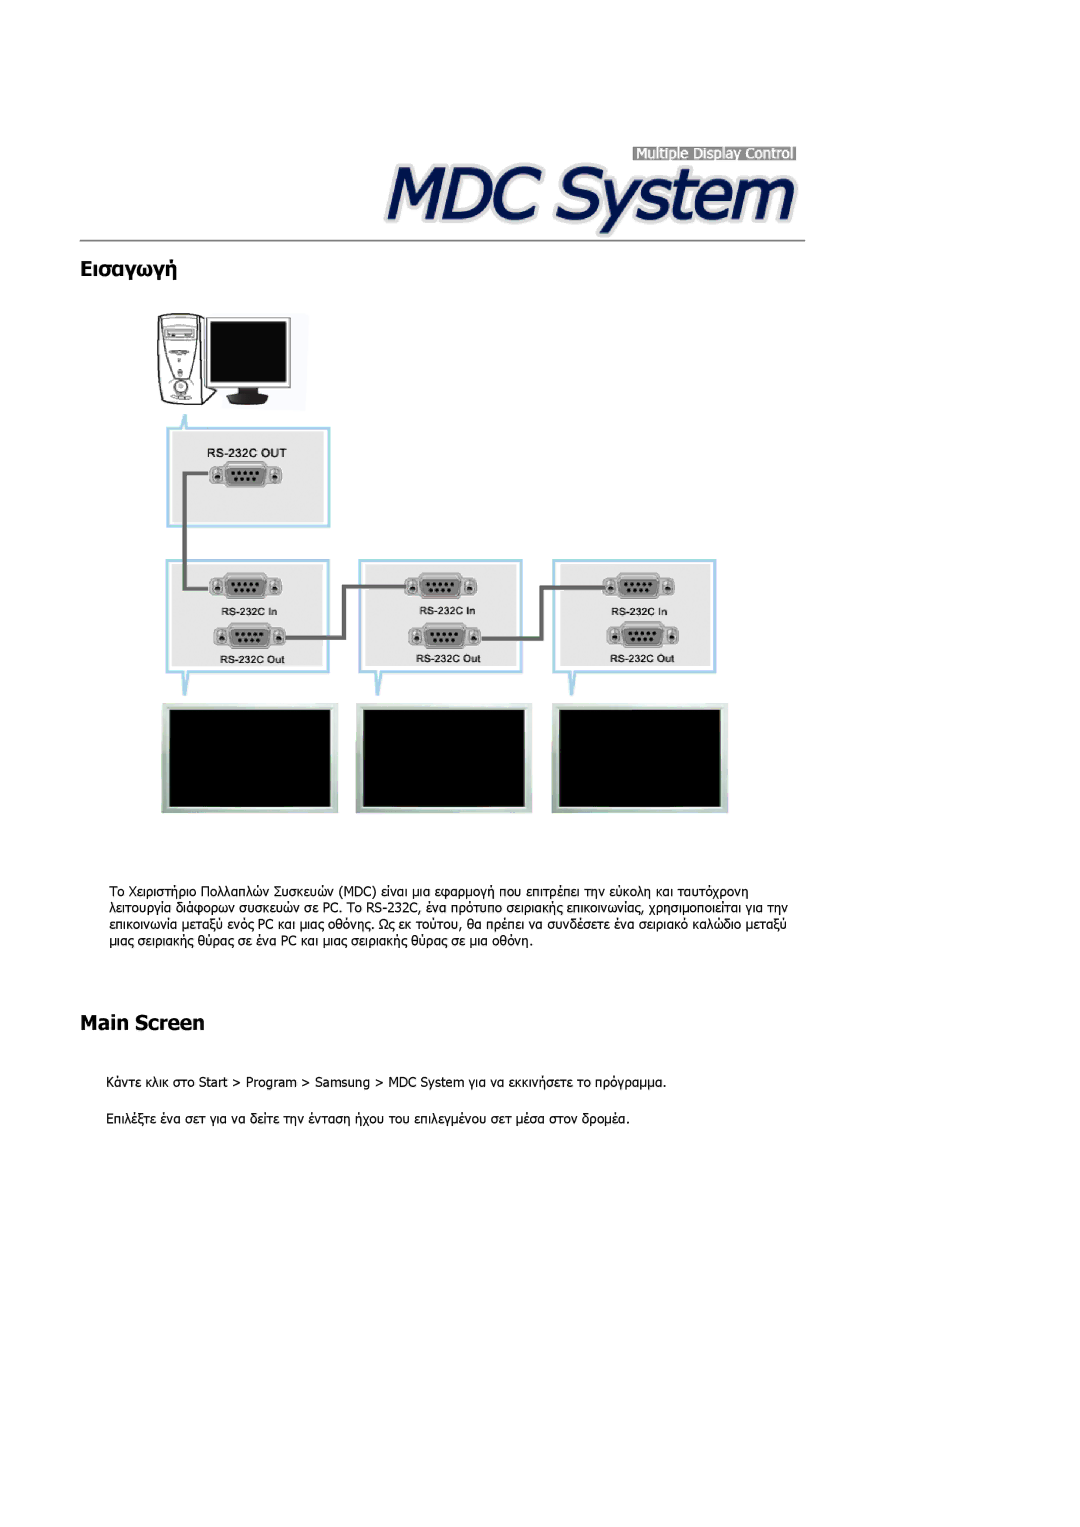 Samsung PH42KPPLBC/EN manual Εισαγωγή, Main Screen 